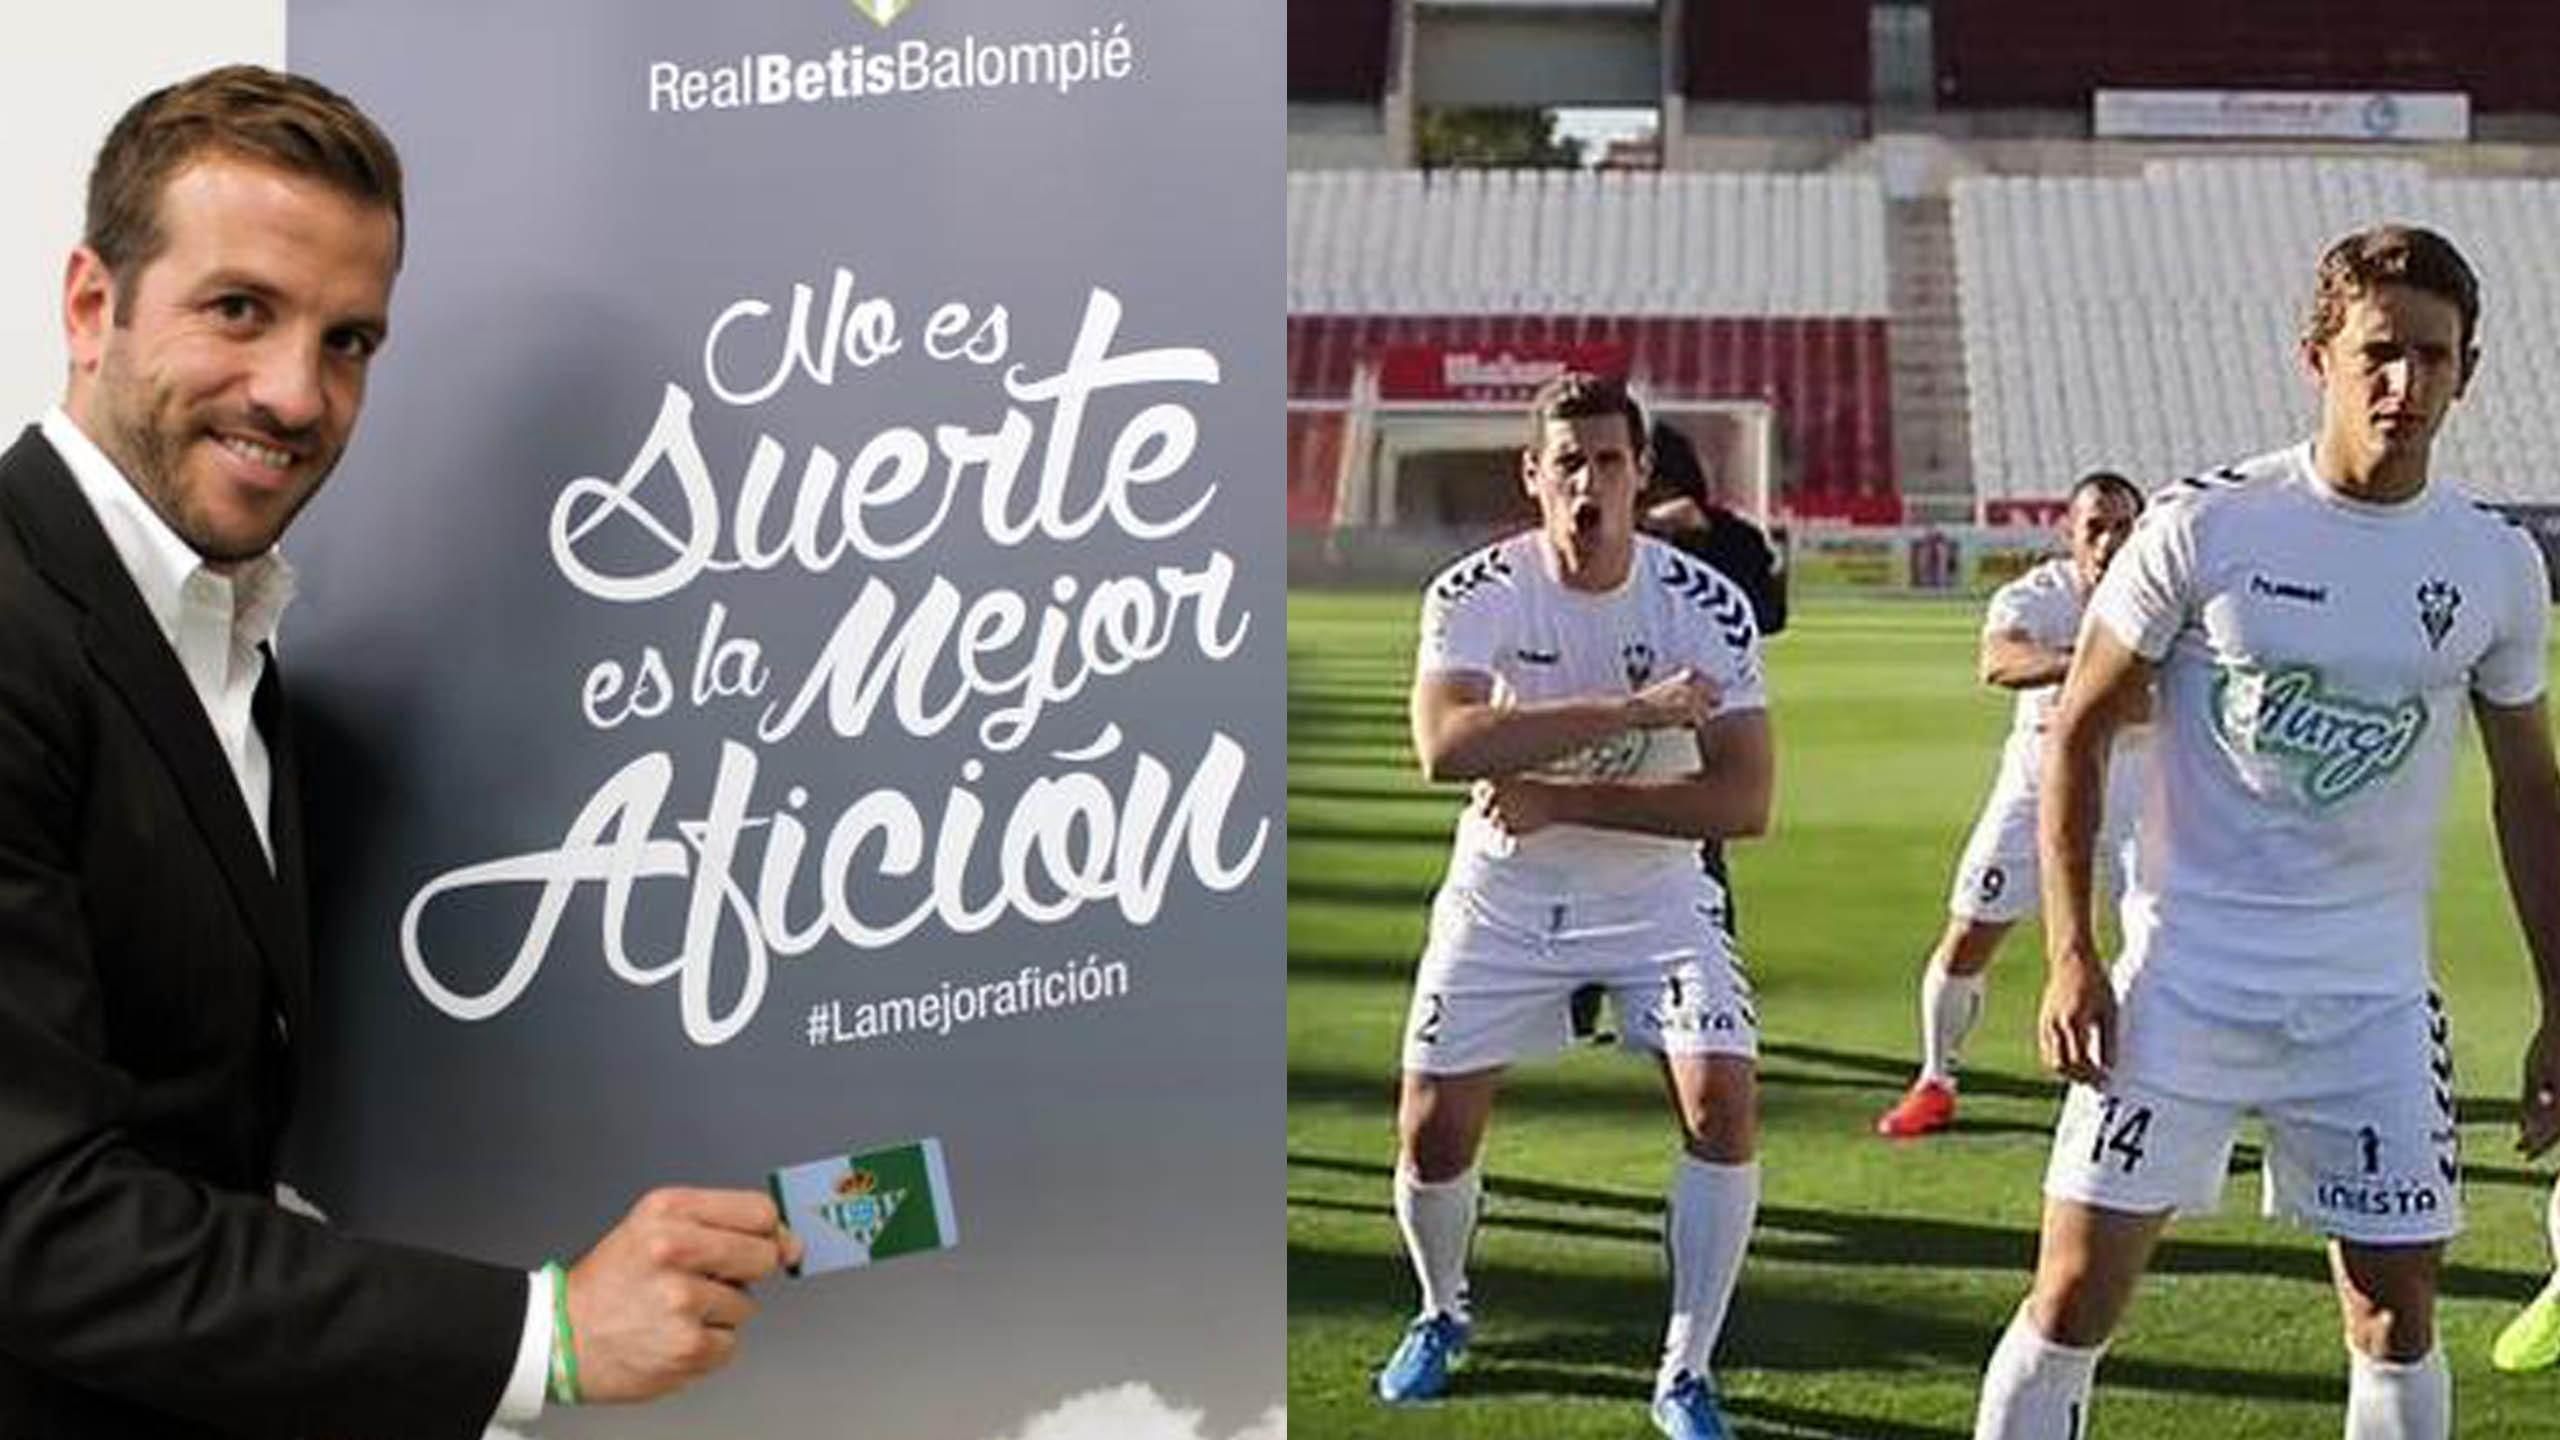 Mensaje a los abonados del Real Betis - Real Betis Balompié